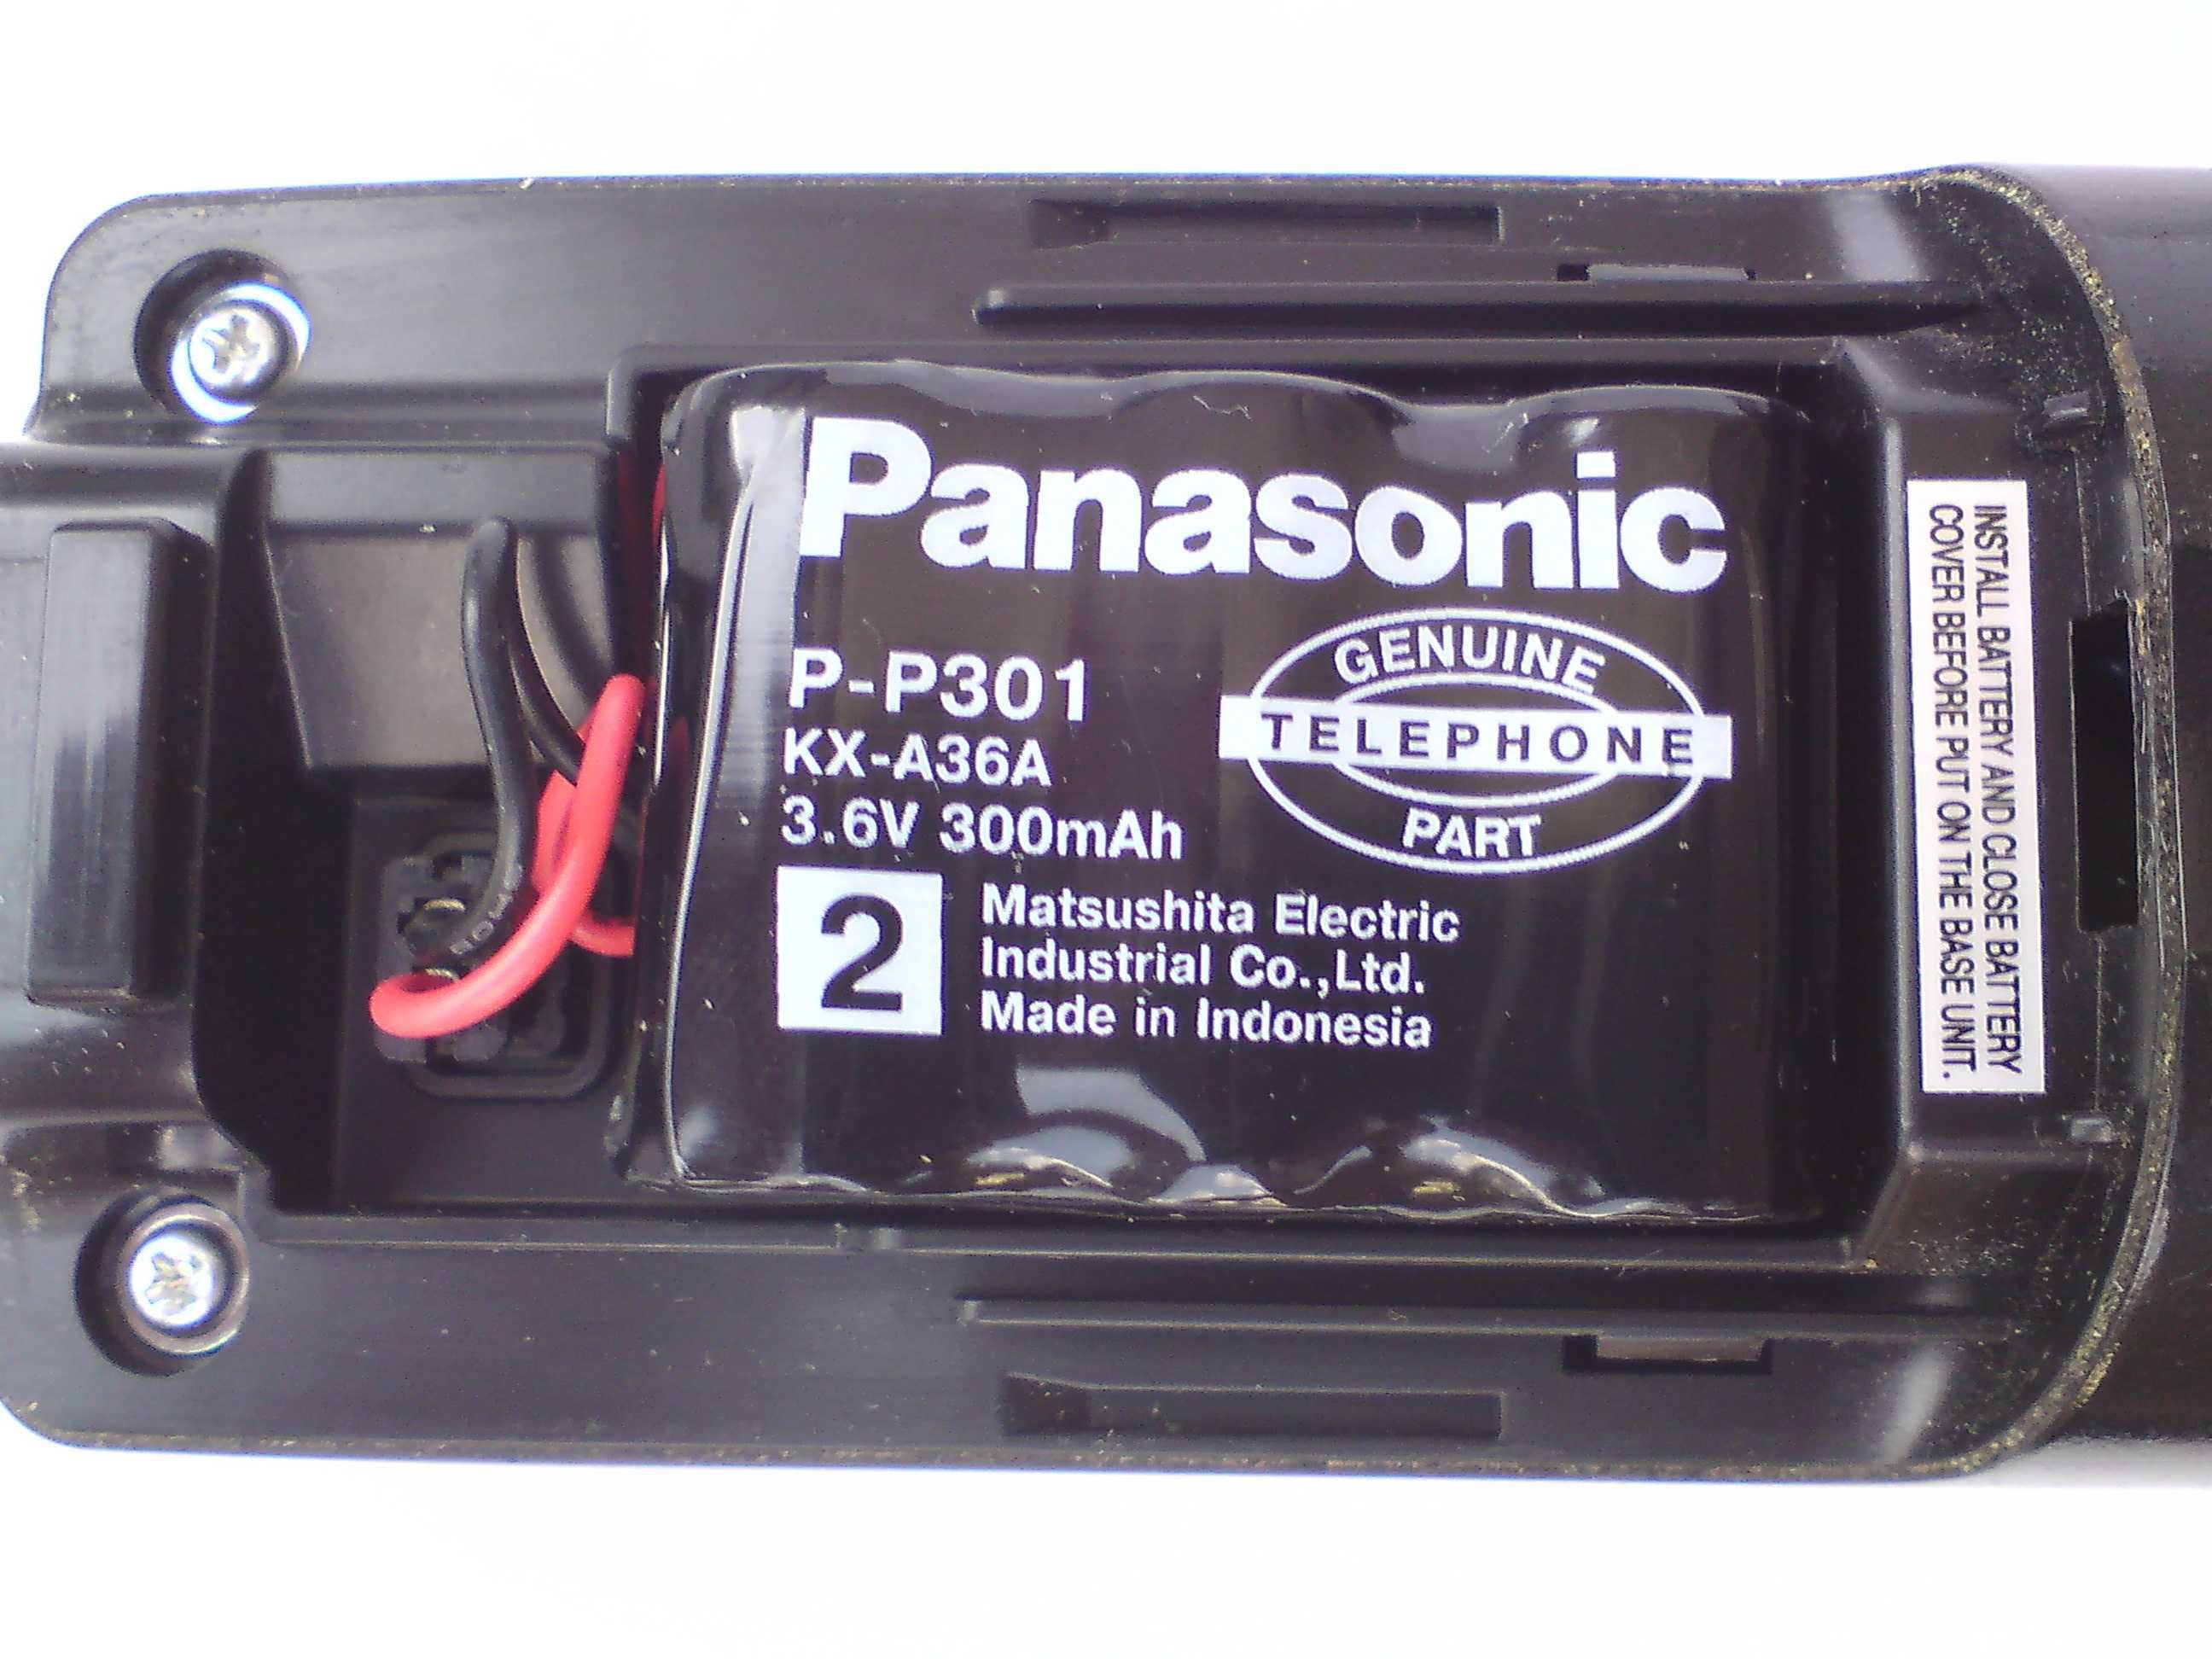 Беспроводной радиотелефон Panasonic KX-TC2106UA (состояние неизвестно)